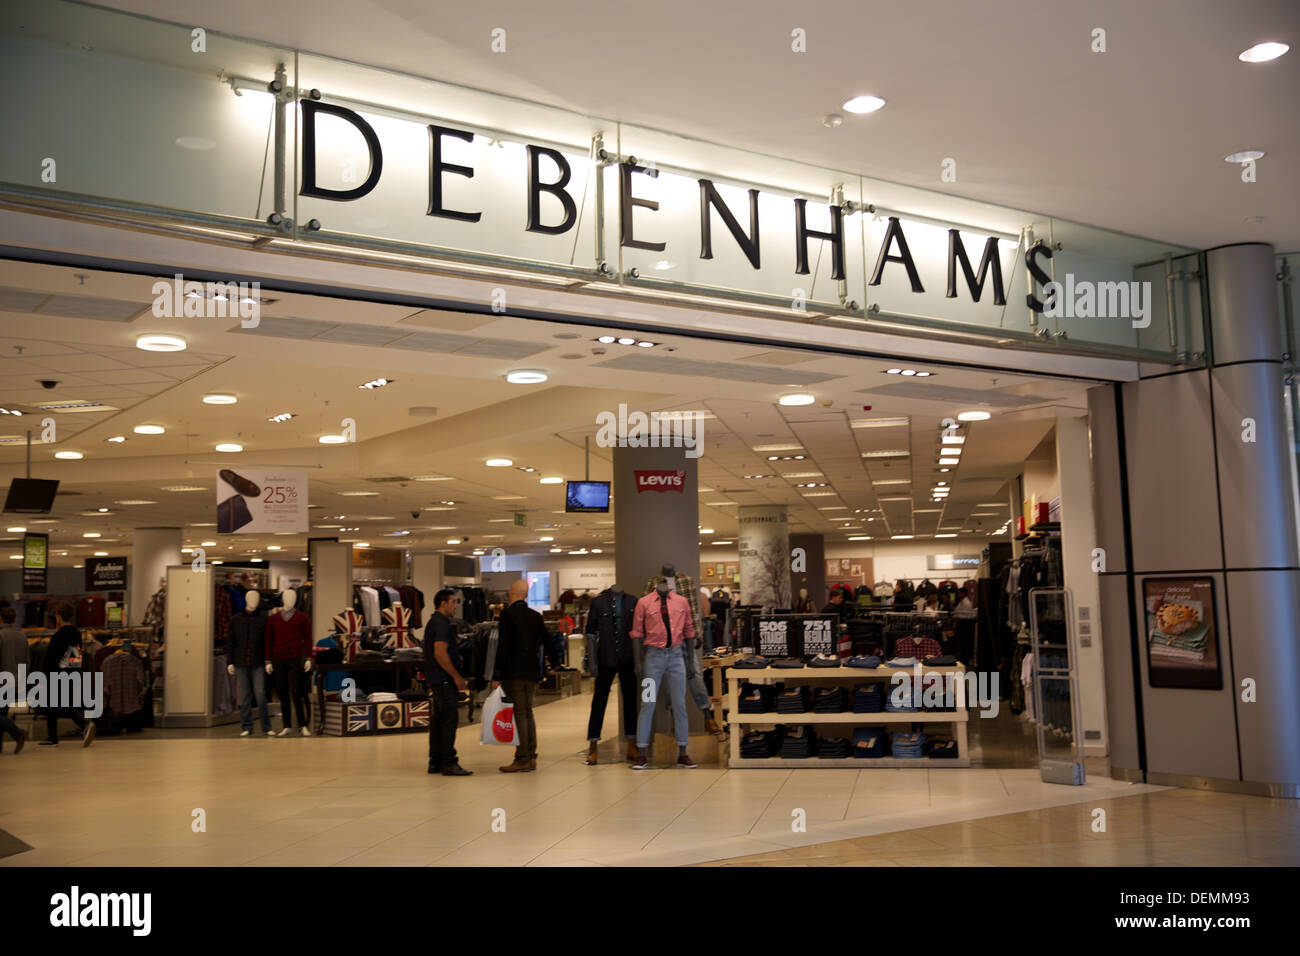 Debenhams Shop Front Stock Photo